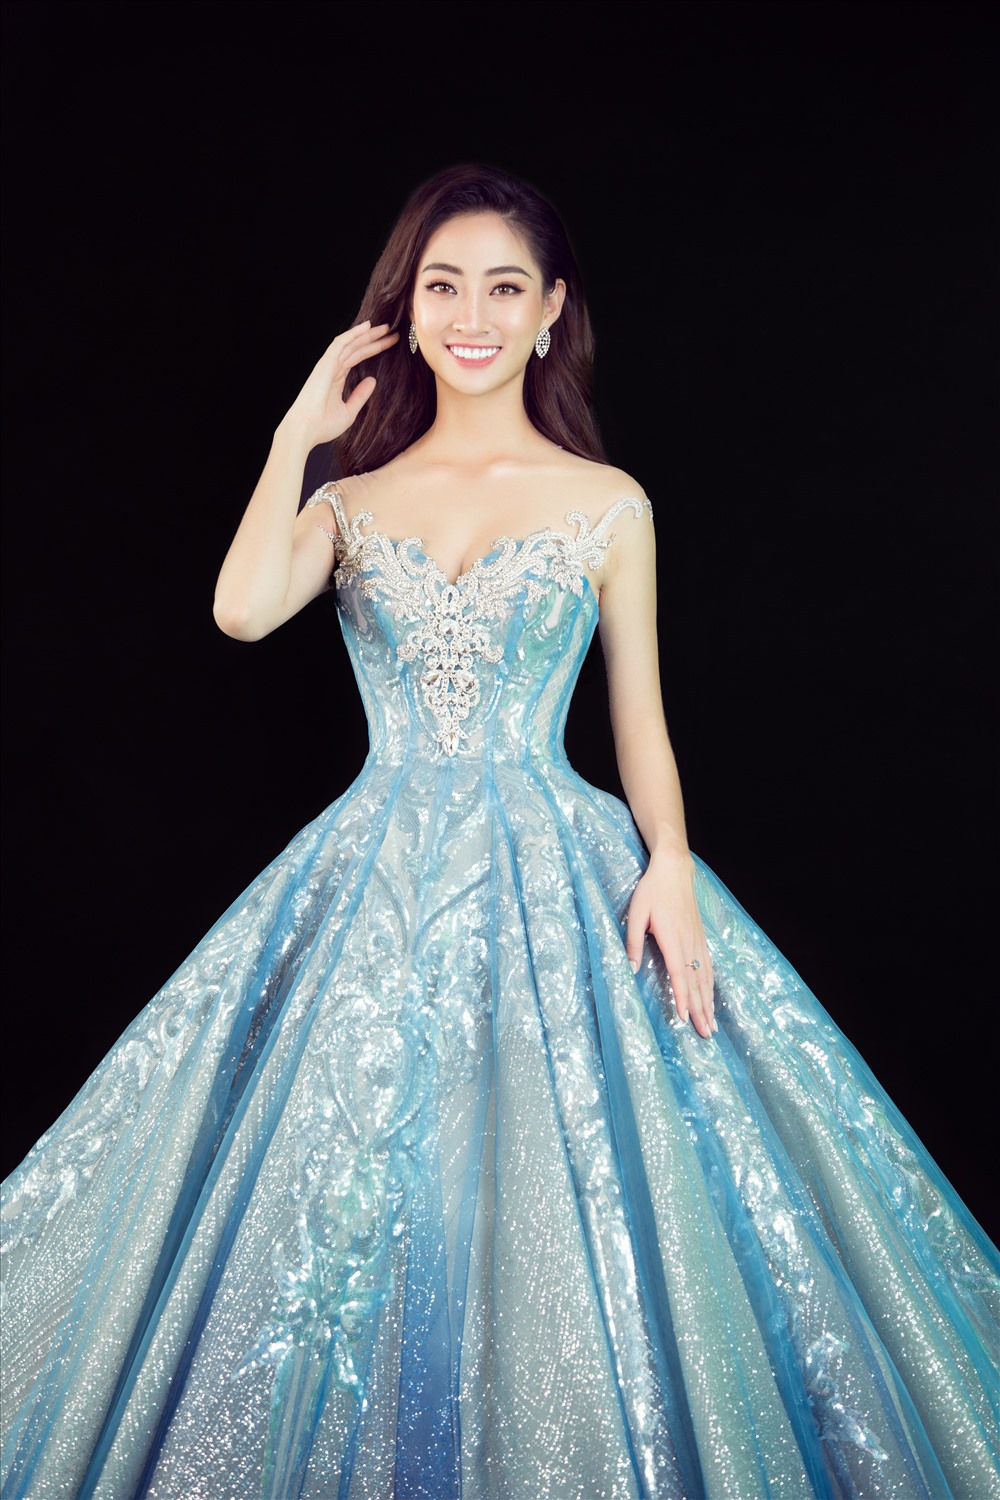 Trong bộ đầm công chúa màu xanh lộng lẫy, Lương Thùy Linh cất lên tiếng hát chất chứa đầy ước mơ khi đến với Miss World 2019. Ảnh: SV.